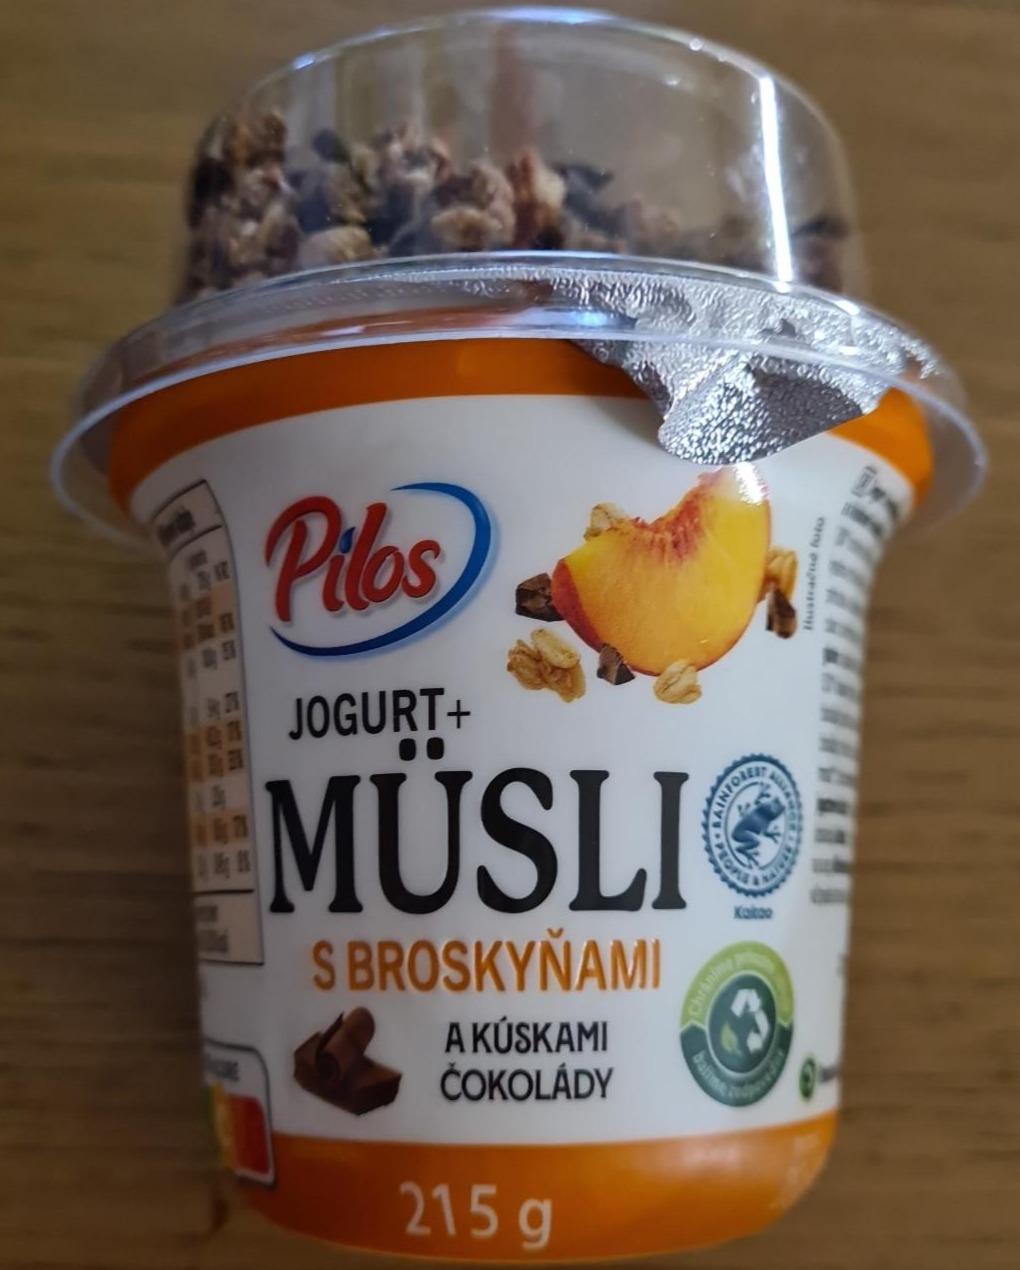 Fotografie - Jogurt+ Müsli s broskyňami a kúskami čokolády Pilos